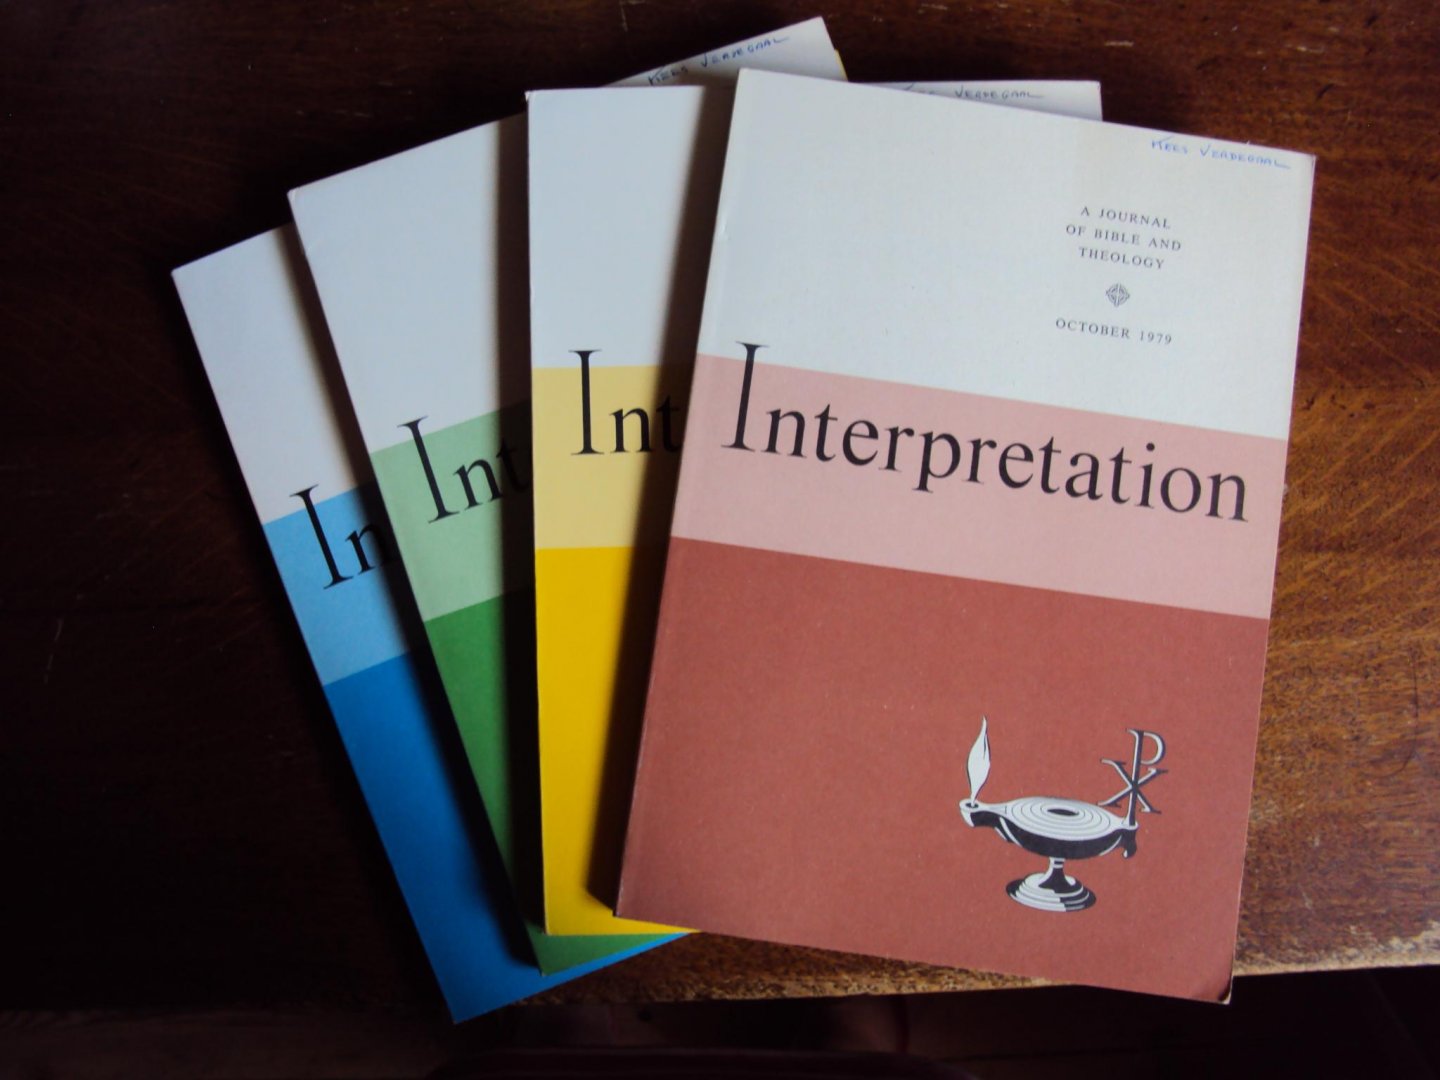  - Interpretation. A Journal of Bible and Theology, Vol. XXXIII nos. 1-4